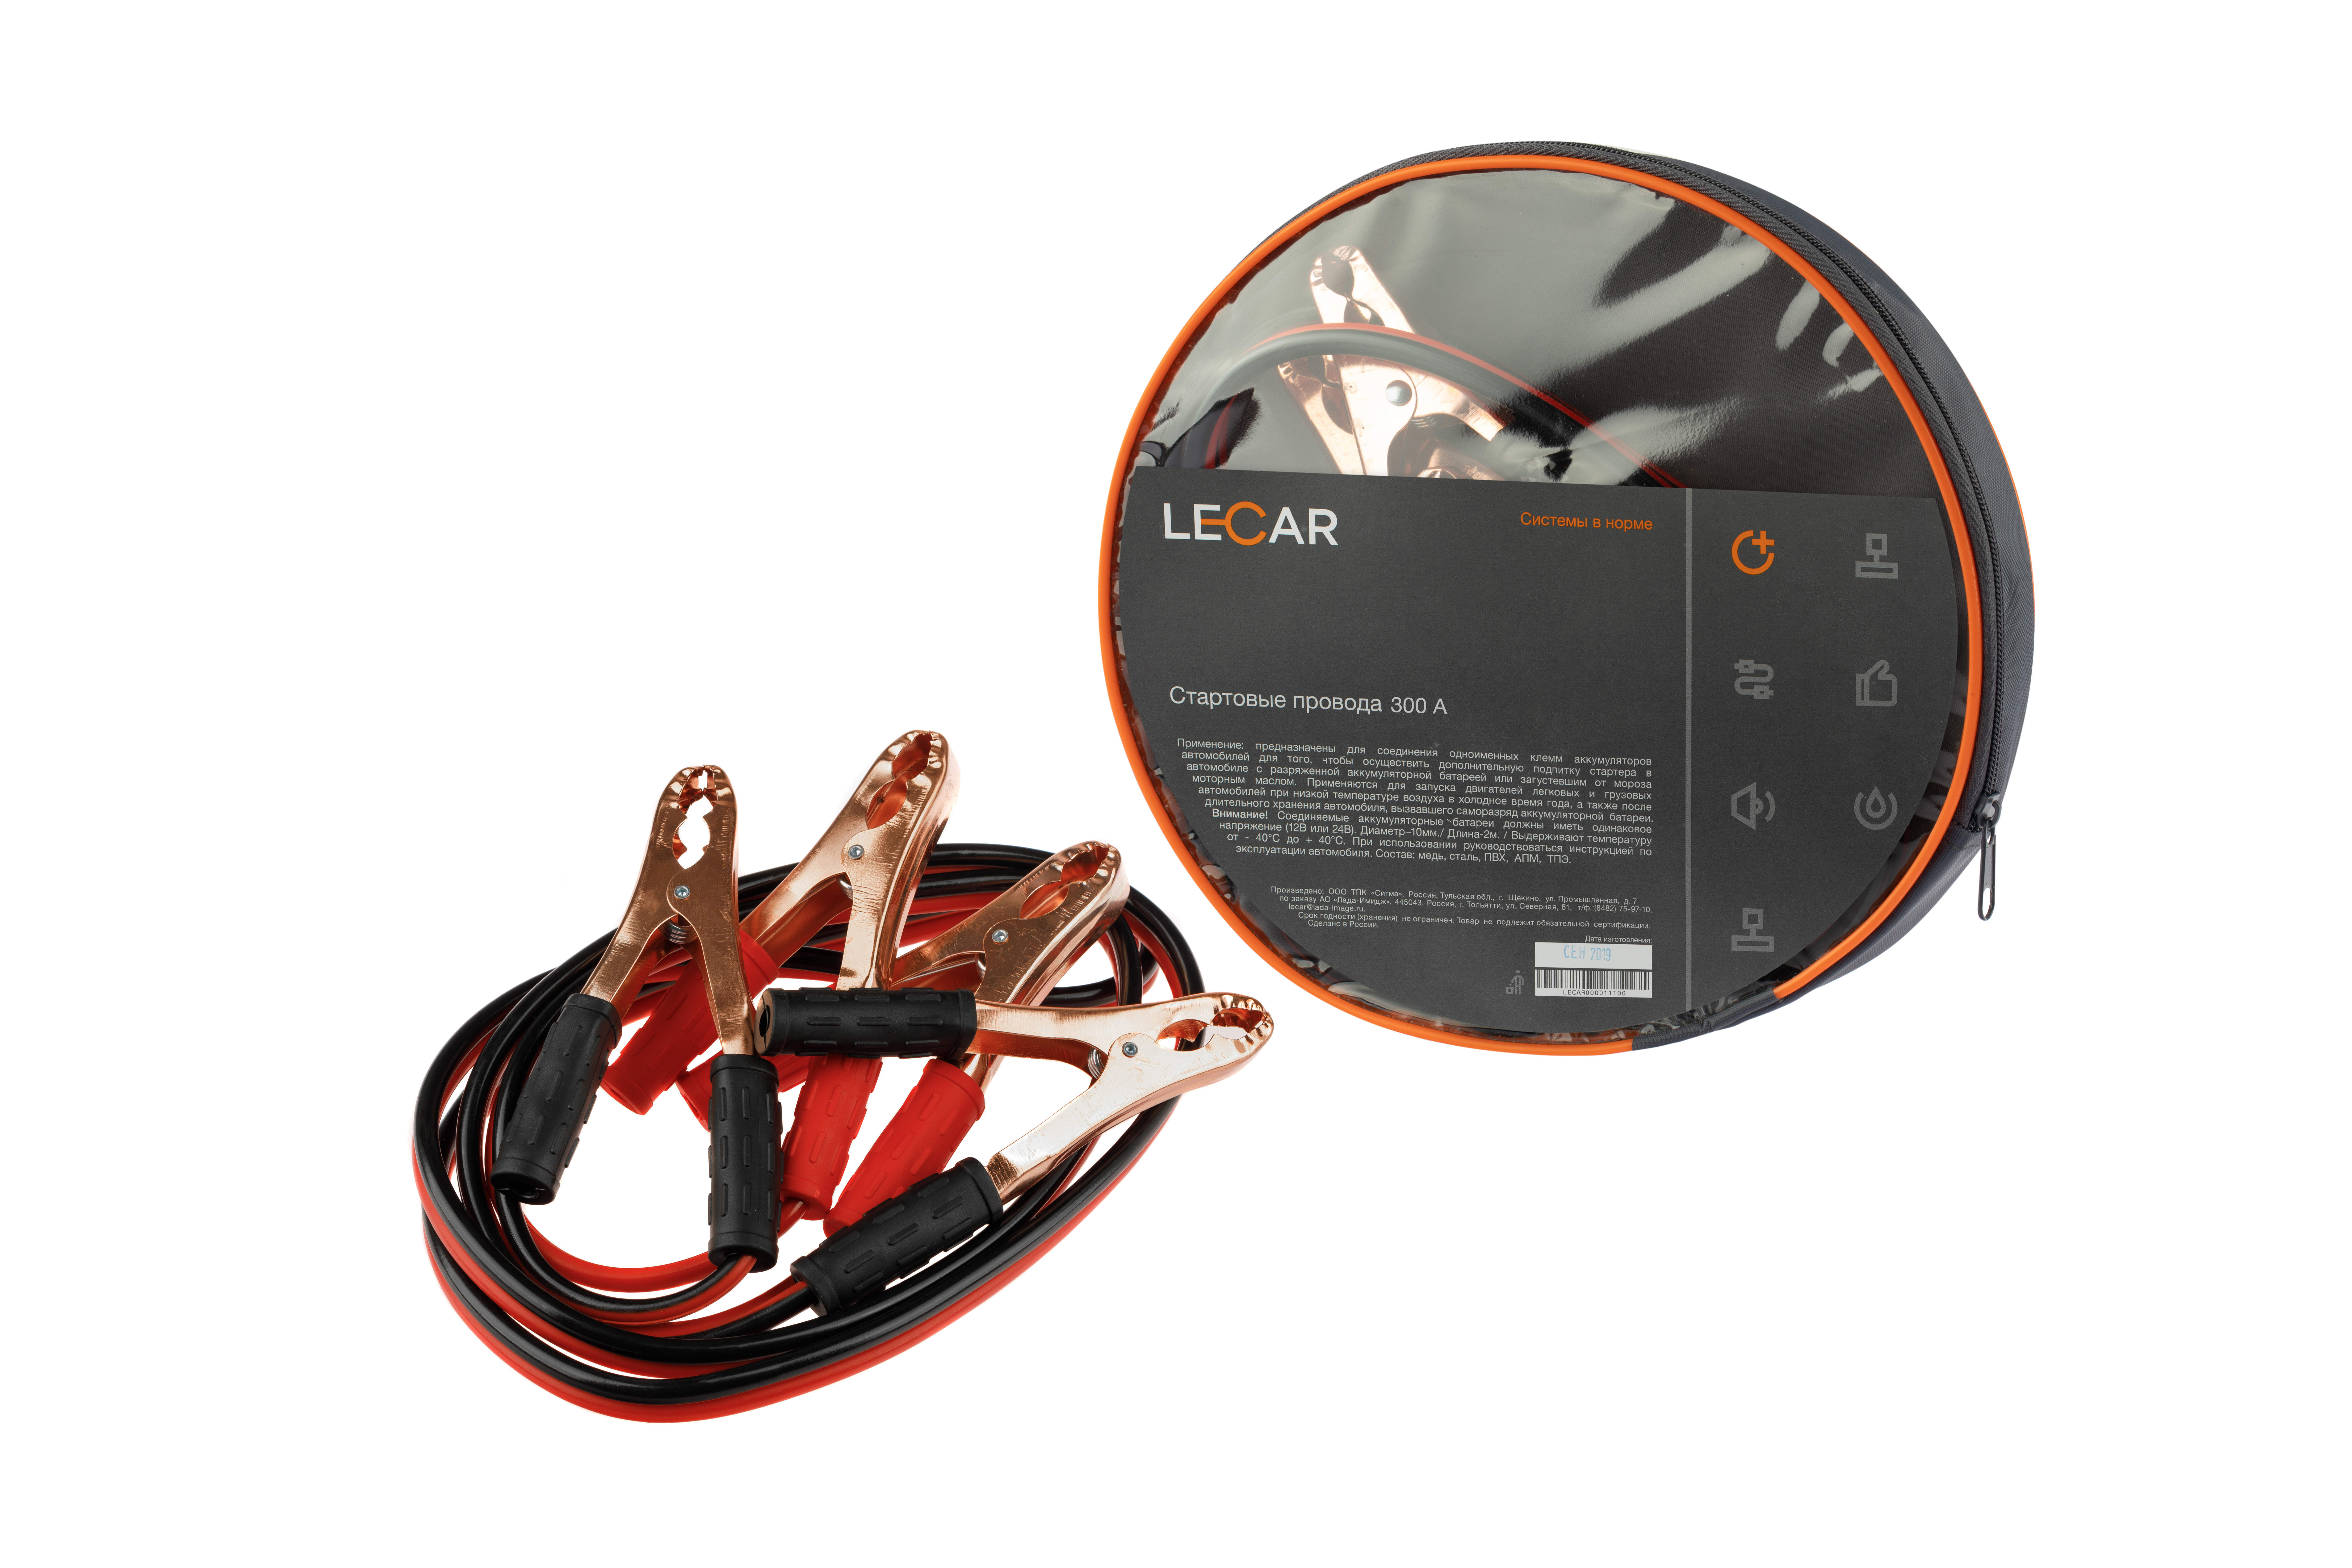 Провода стартовые 300а (lecar) 2,5м фирм.упак lecar - LECAR LECAR000021106